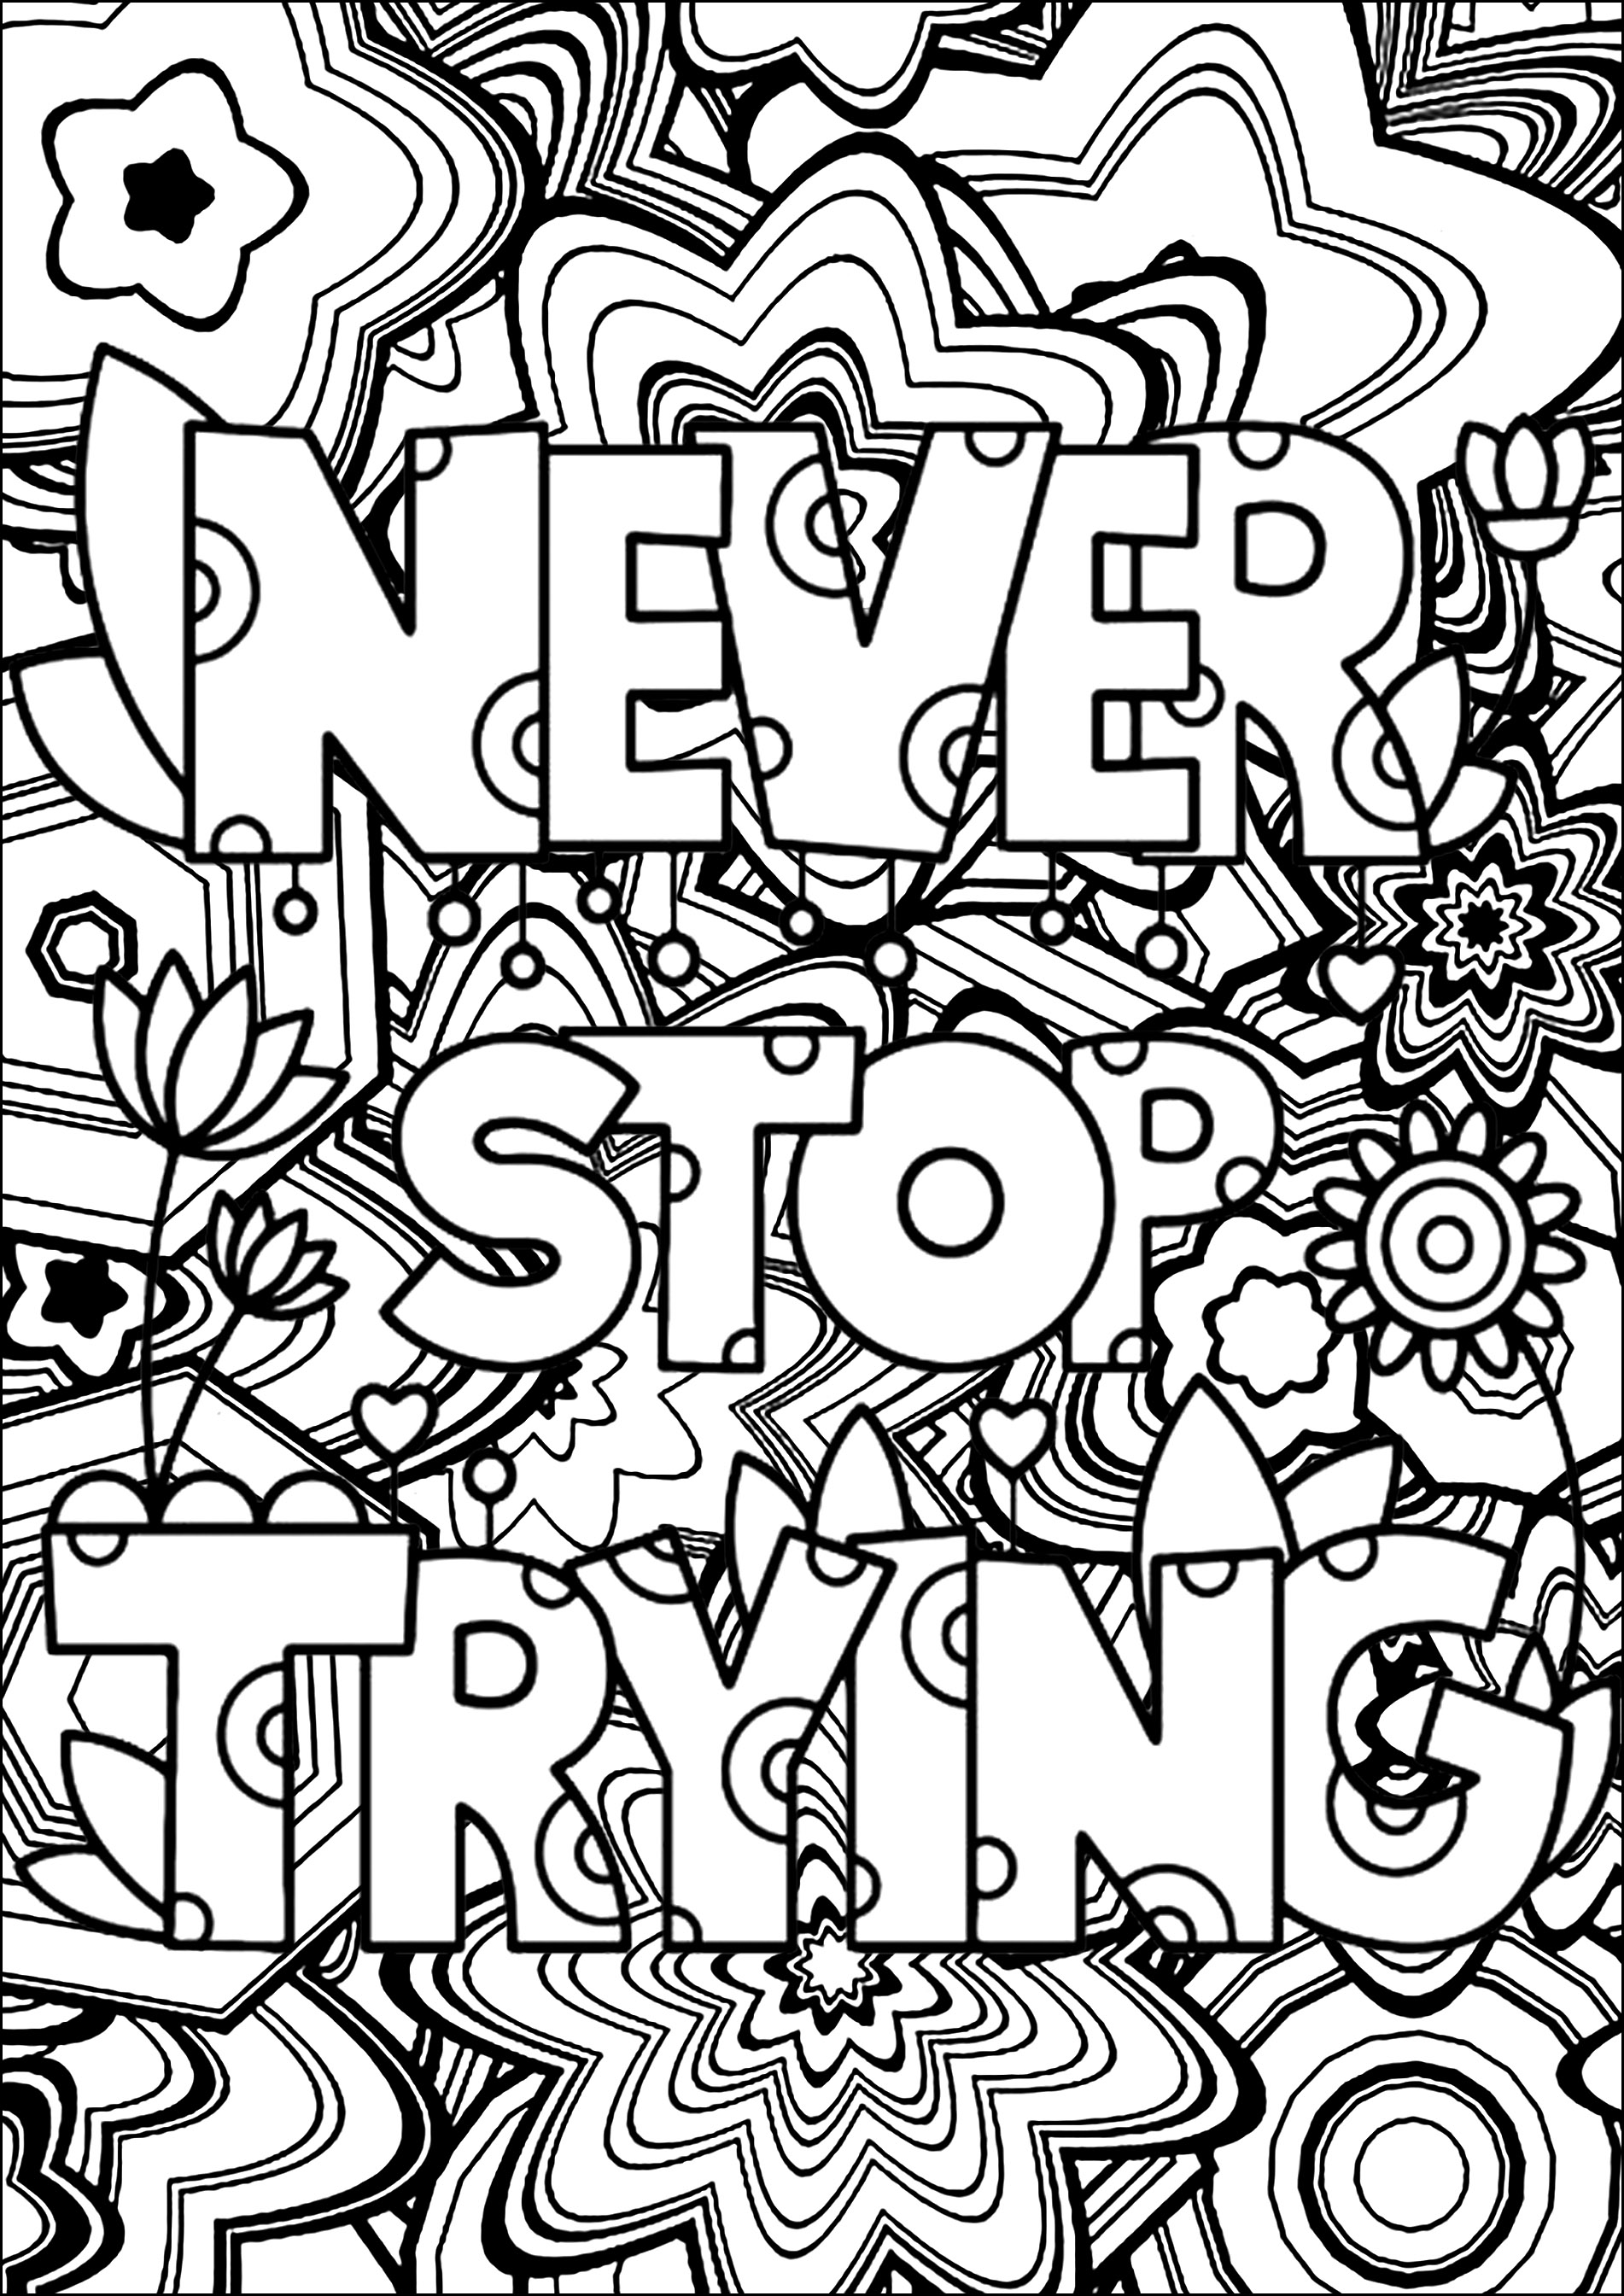 Never Stop Trying (N'arrête jamais d'essayer)